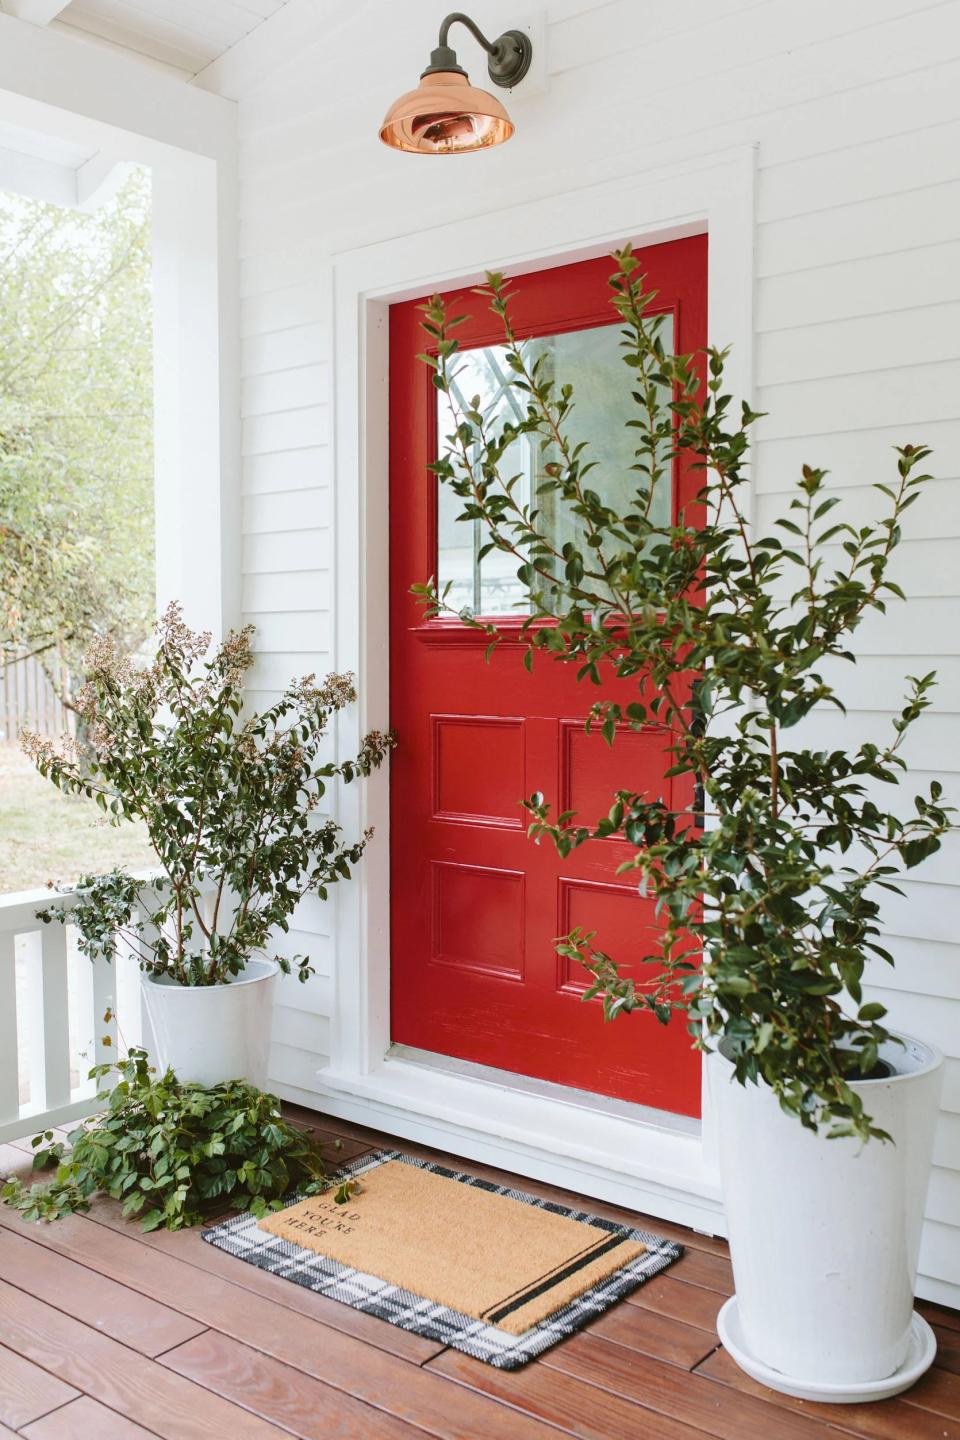 A red painted door